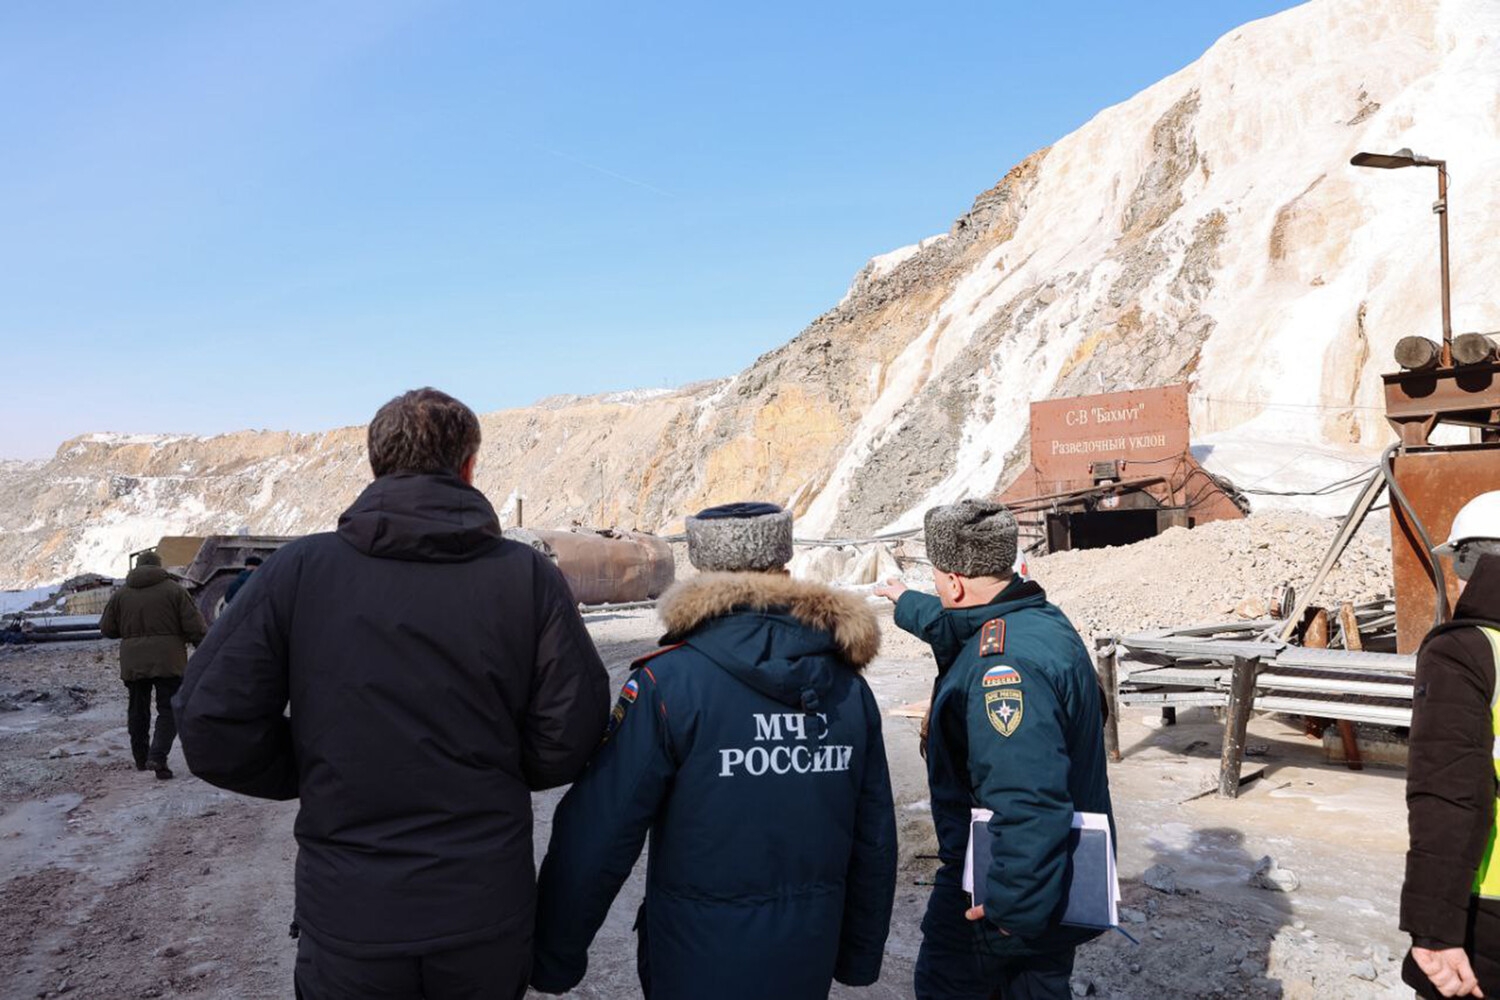 Георадар для мониторинга горных массы доставят на рудник «Пионер» 27 марта